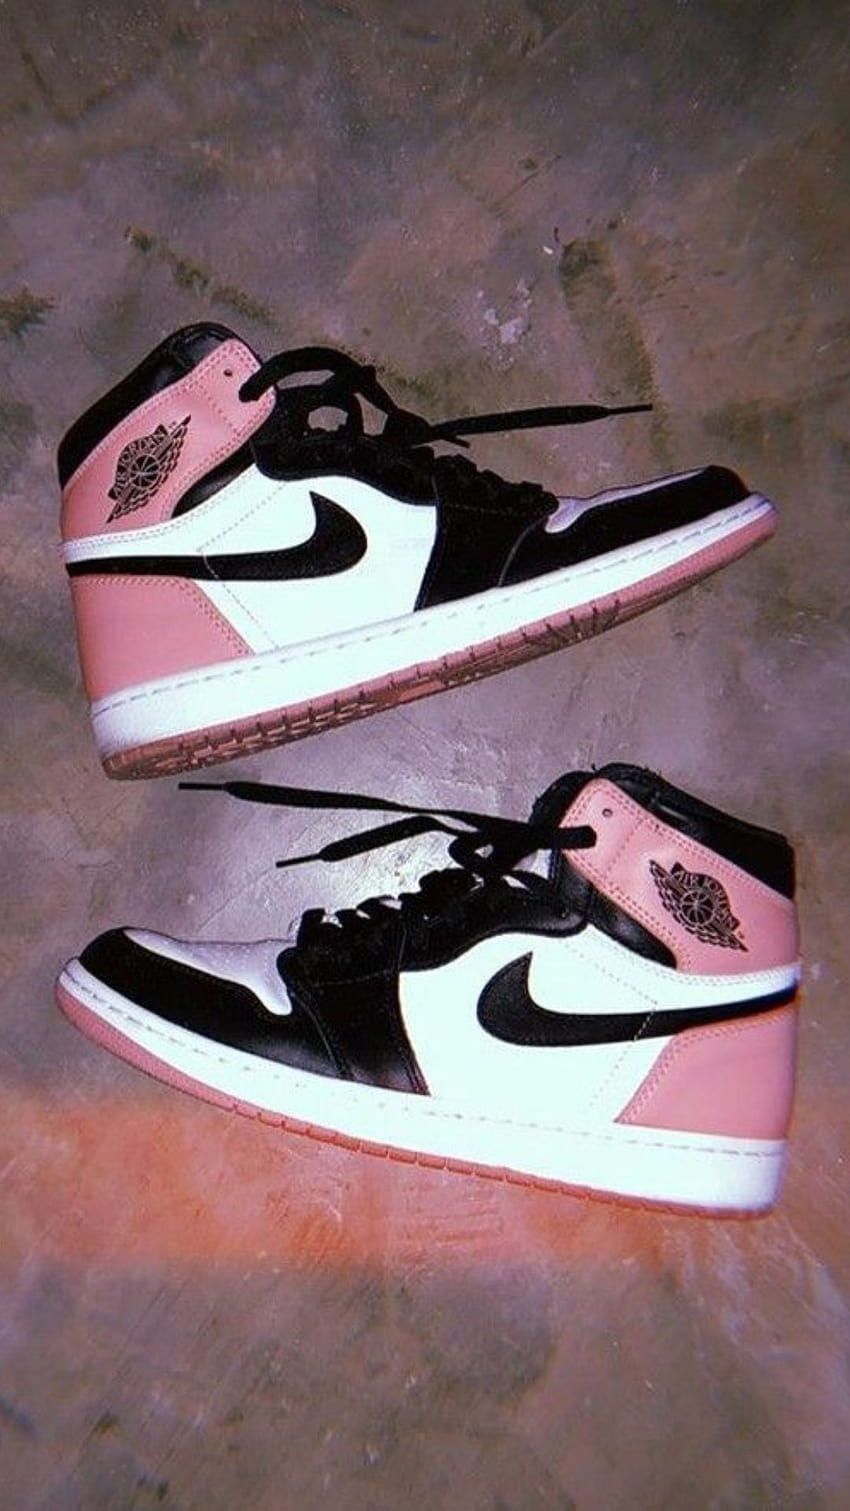 A pair of pink and black Nike sneakers - Air Jordan